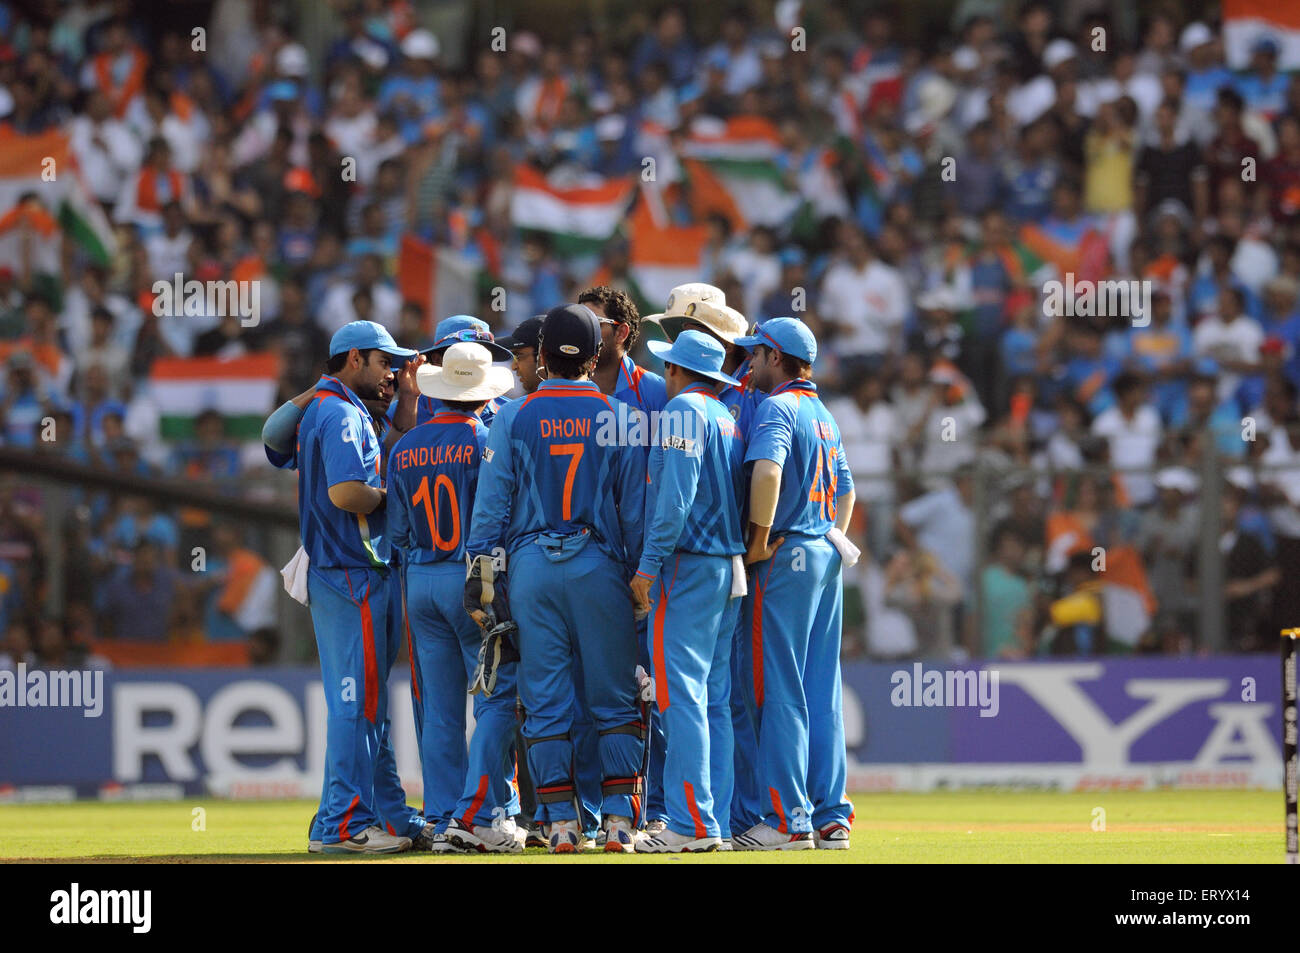 Équipe indienne de cricket les finales de la coupe du monde de cricket de l'ICC contre le Sri Lanka ont joué au stade Wankhede Bombay Mumbai Maharashtra Inde Banque D'Images